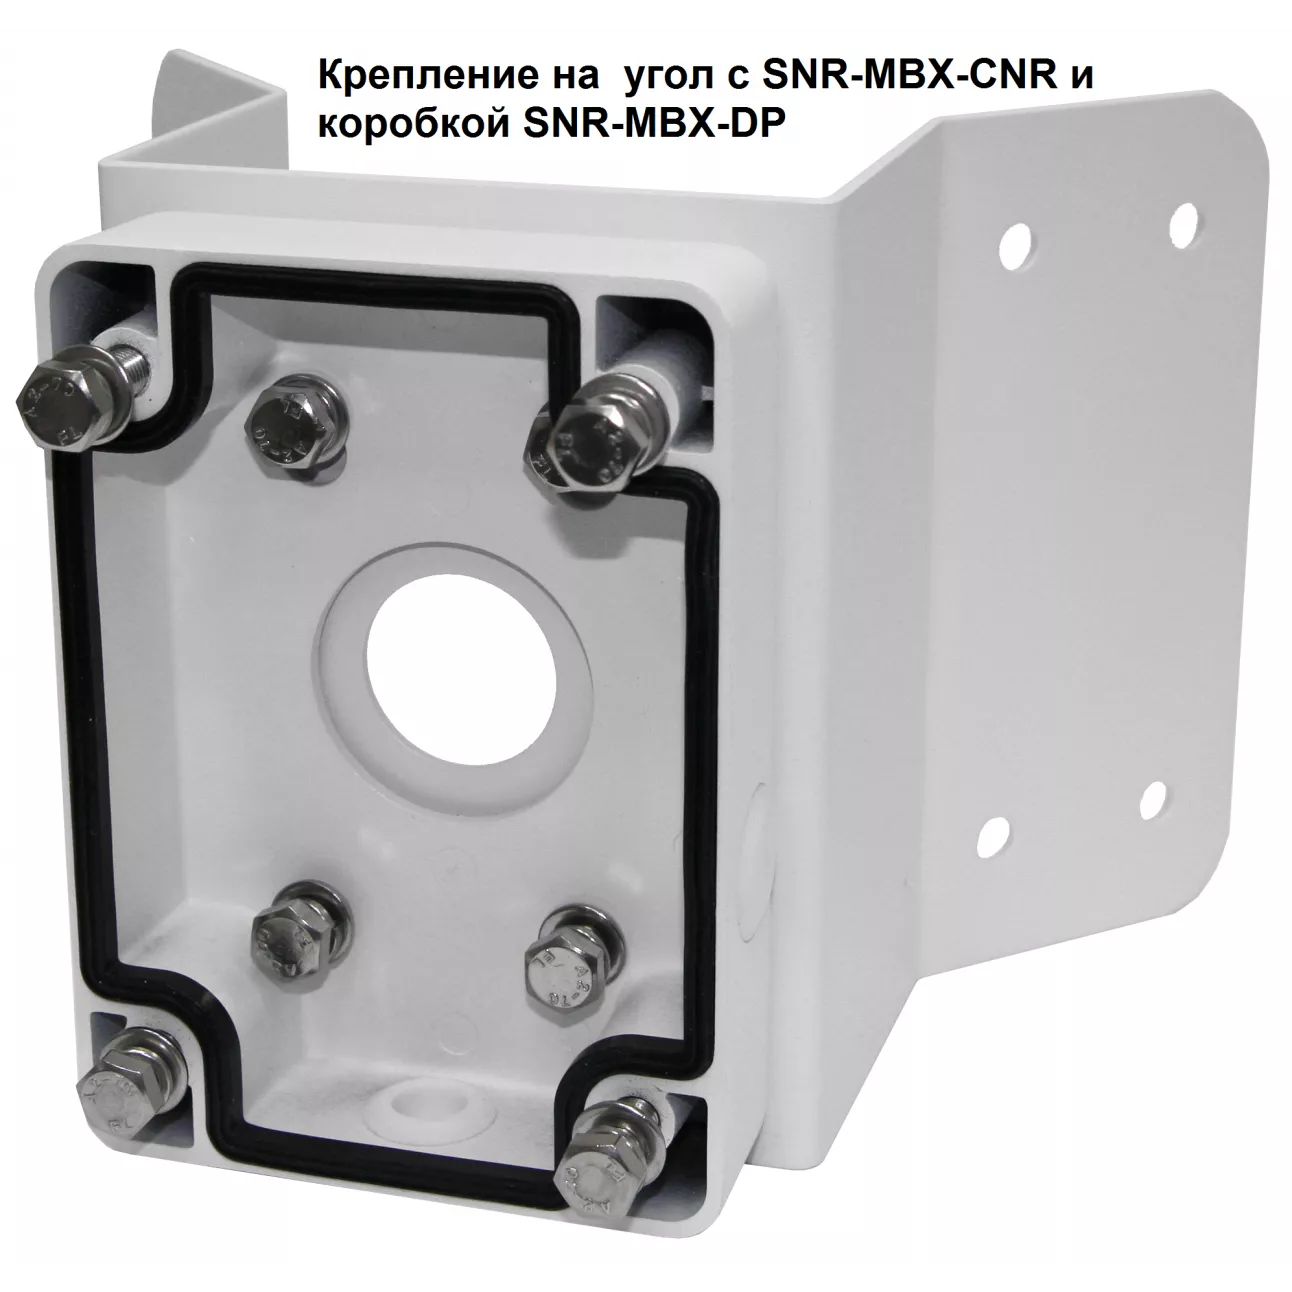 IP камера SNR-CI-DP2.0INT30I cкоростная поворотная 2Мп  с 30х опт.увелич. c ИК подсветкой, с аналитикой и автотрекингом (неполная комплектация)